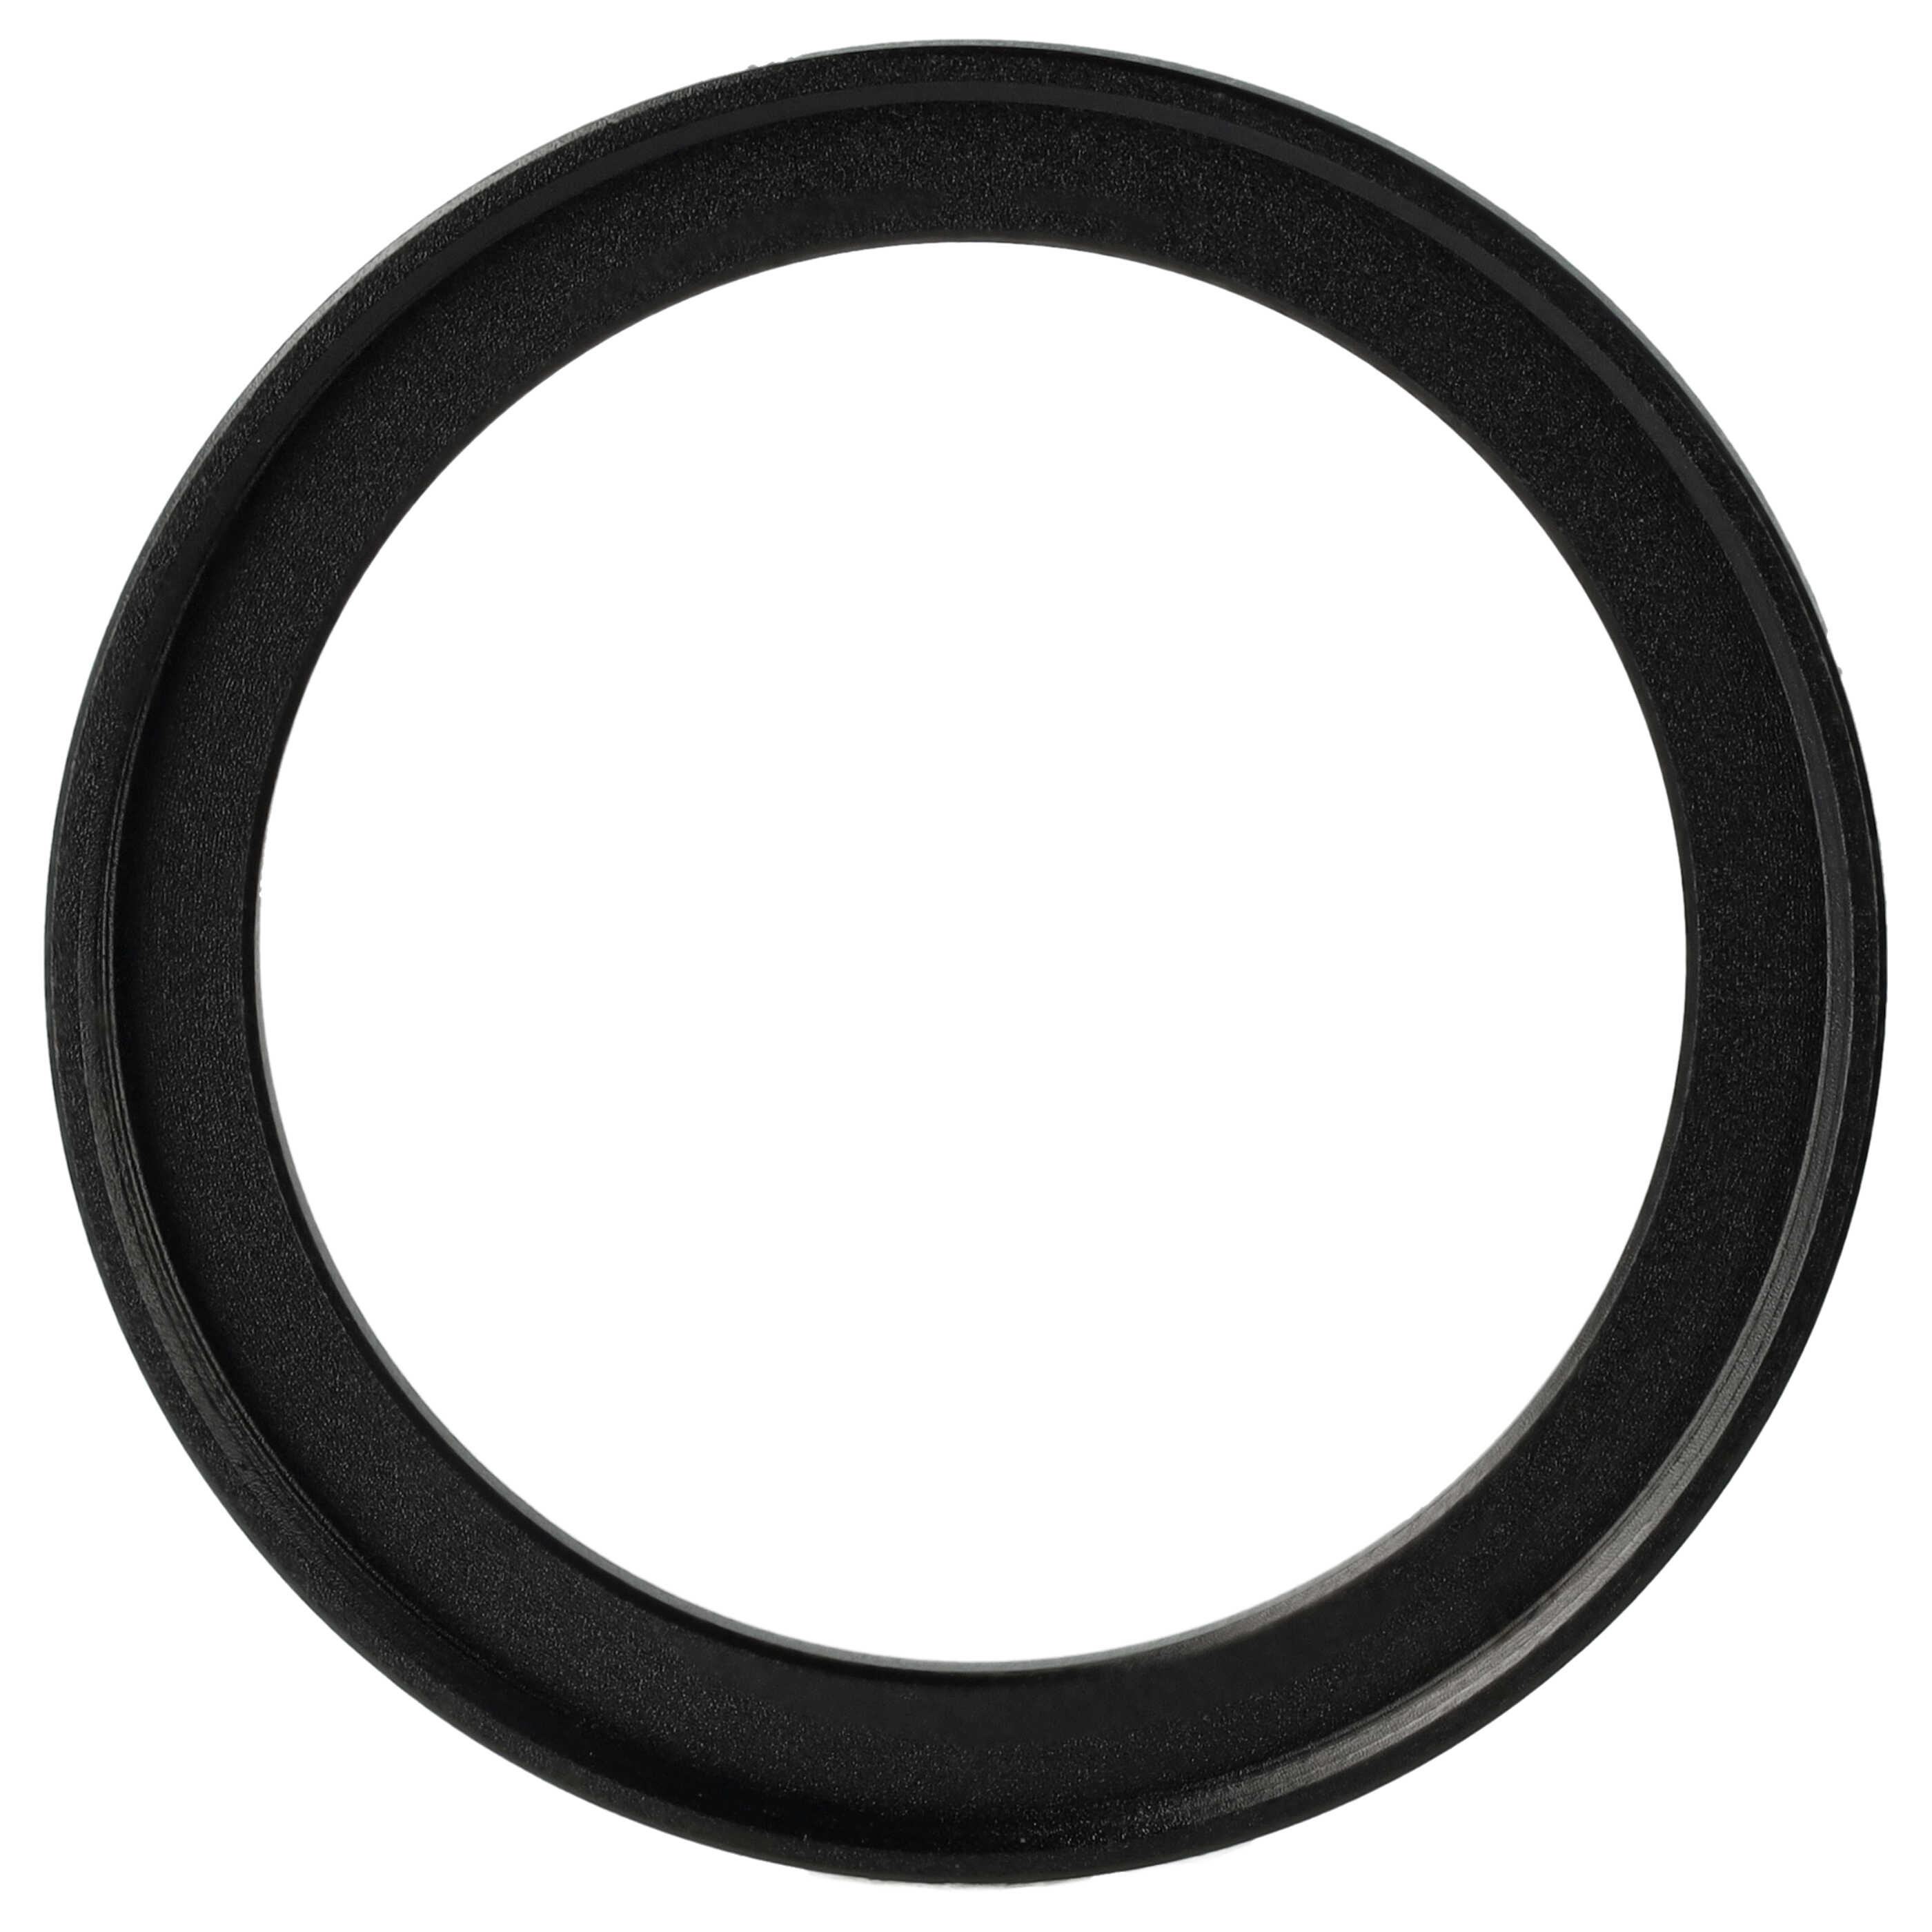 Step-Up-Ring Adapter 43 mm auf 49 mm passend für diverse Kamera-Objektive - Filteradapter